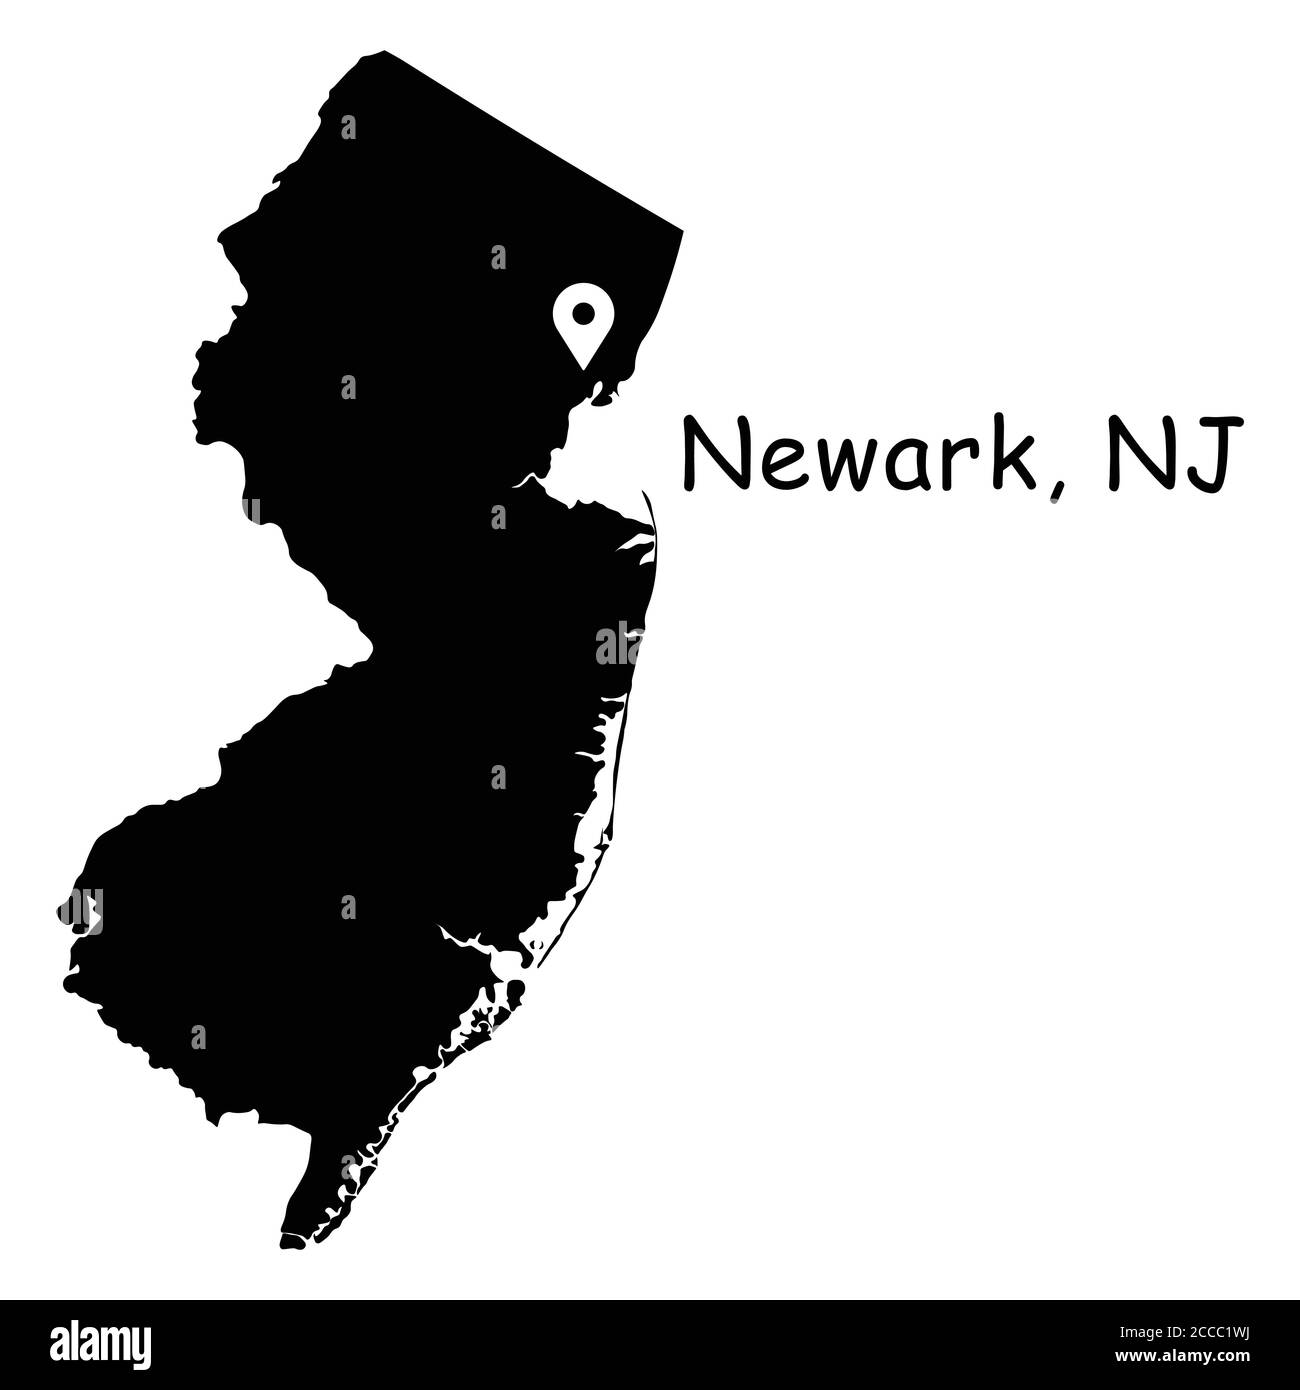 Newark auf New Jersey State Map. Detaillierte NJ State Map mit Location Pin auf Newark City. Schwarze Silhouette Vektorkarte isoliert auf weißem Hintergrund. Stock Vektor